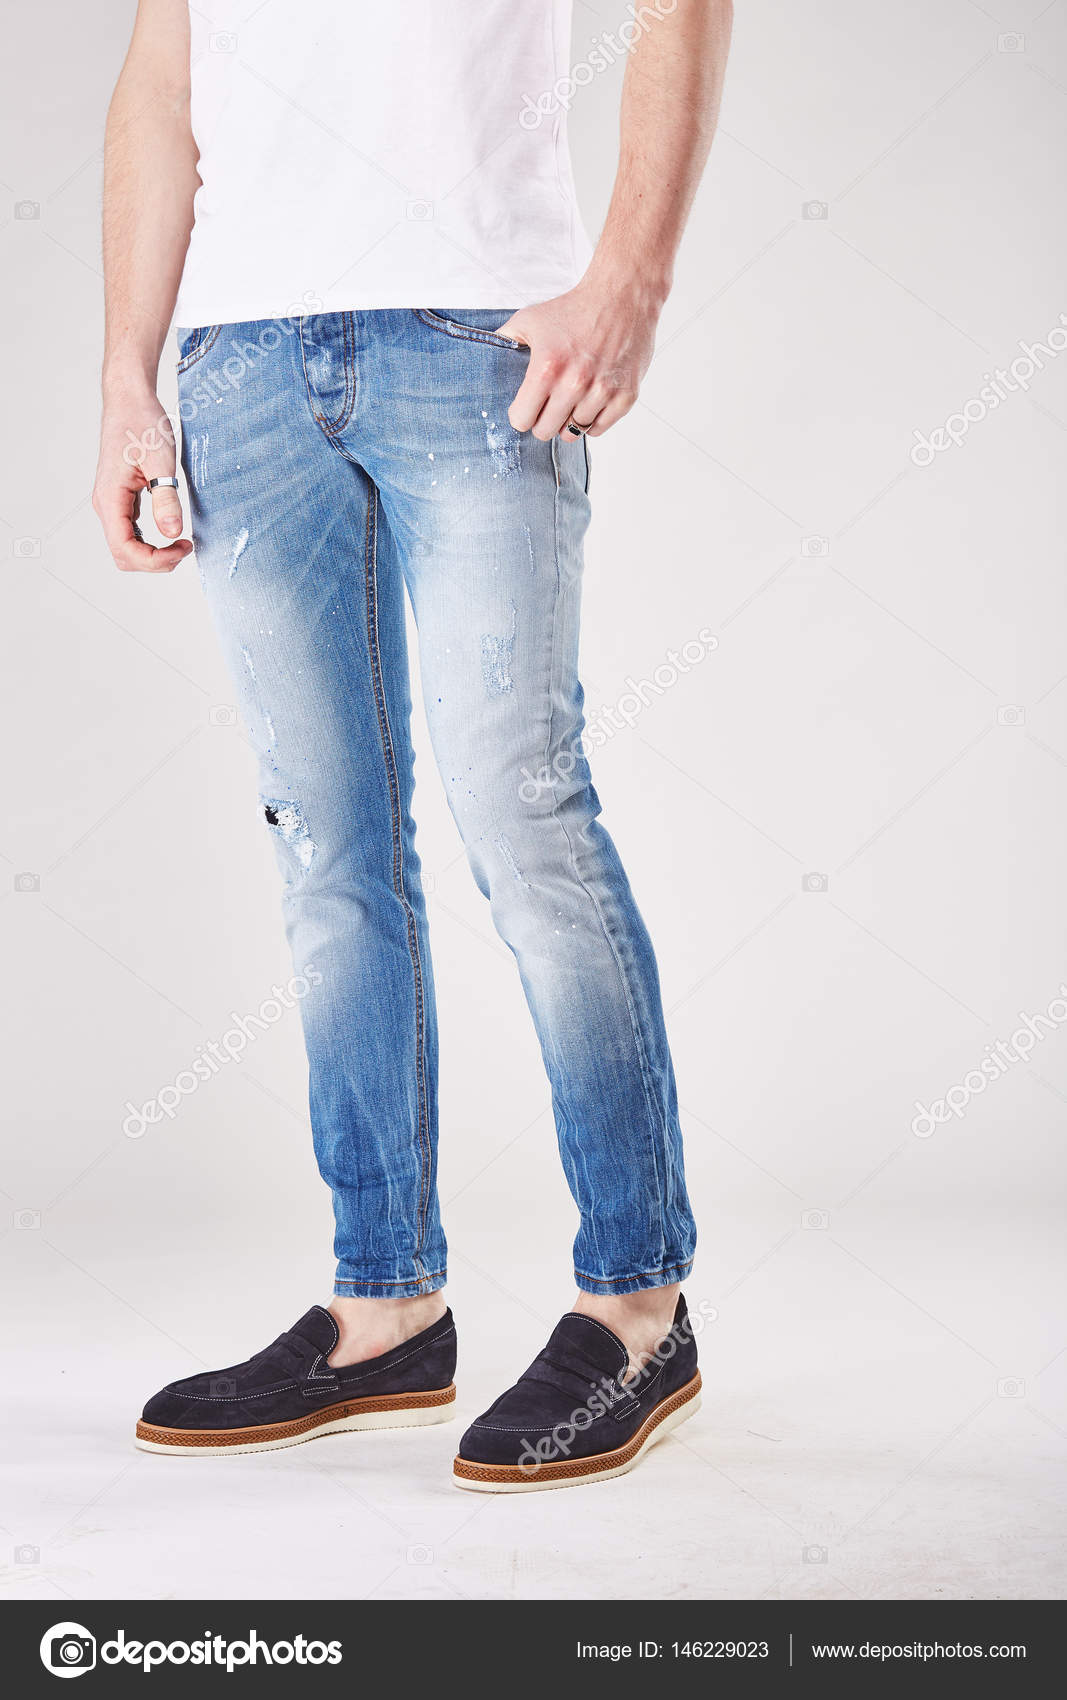 light studio in trendy light blue jeans 